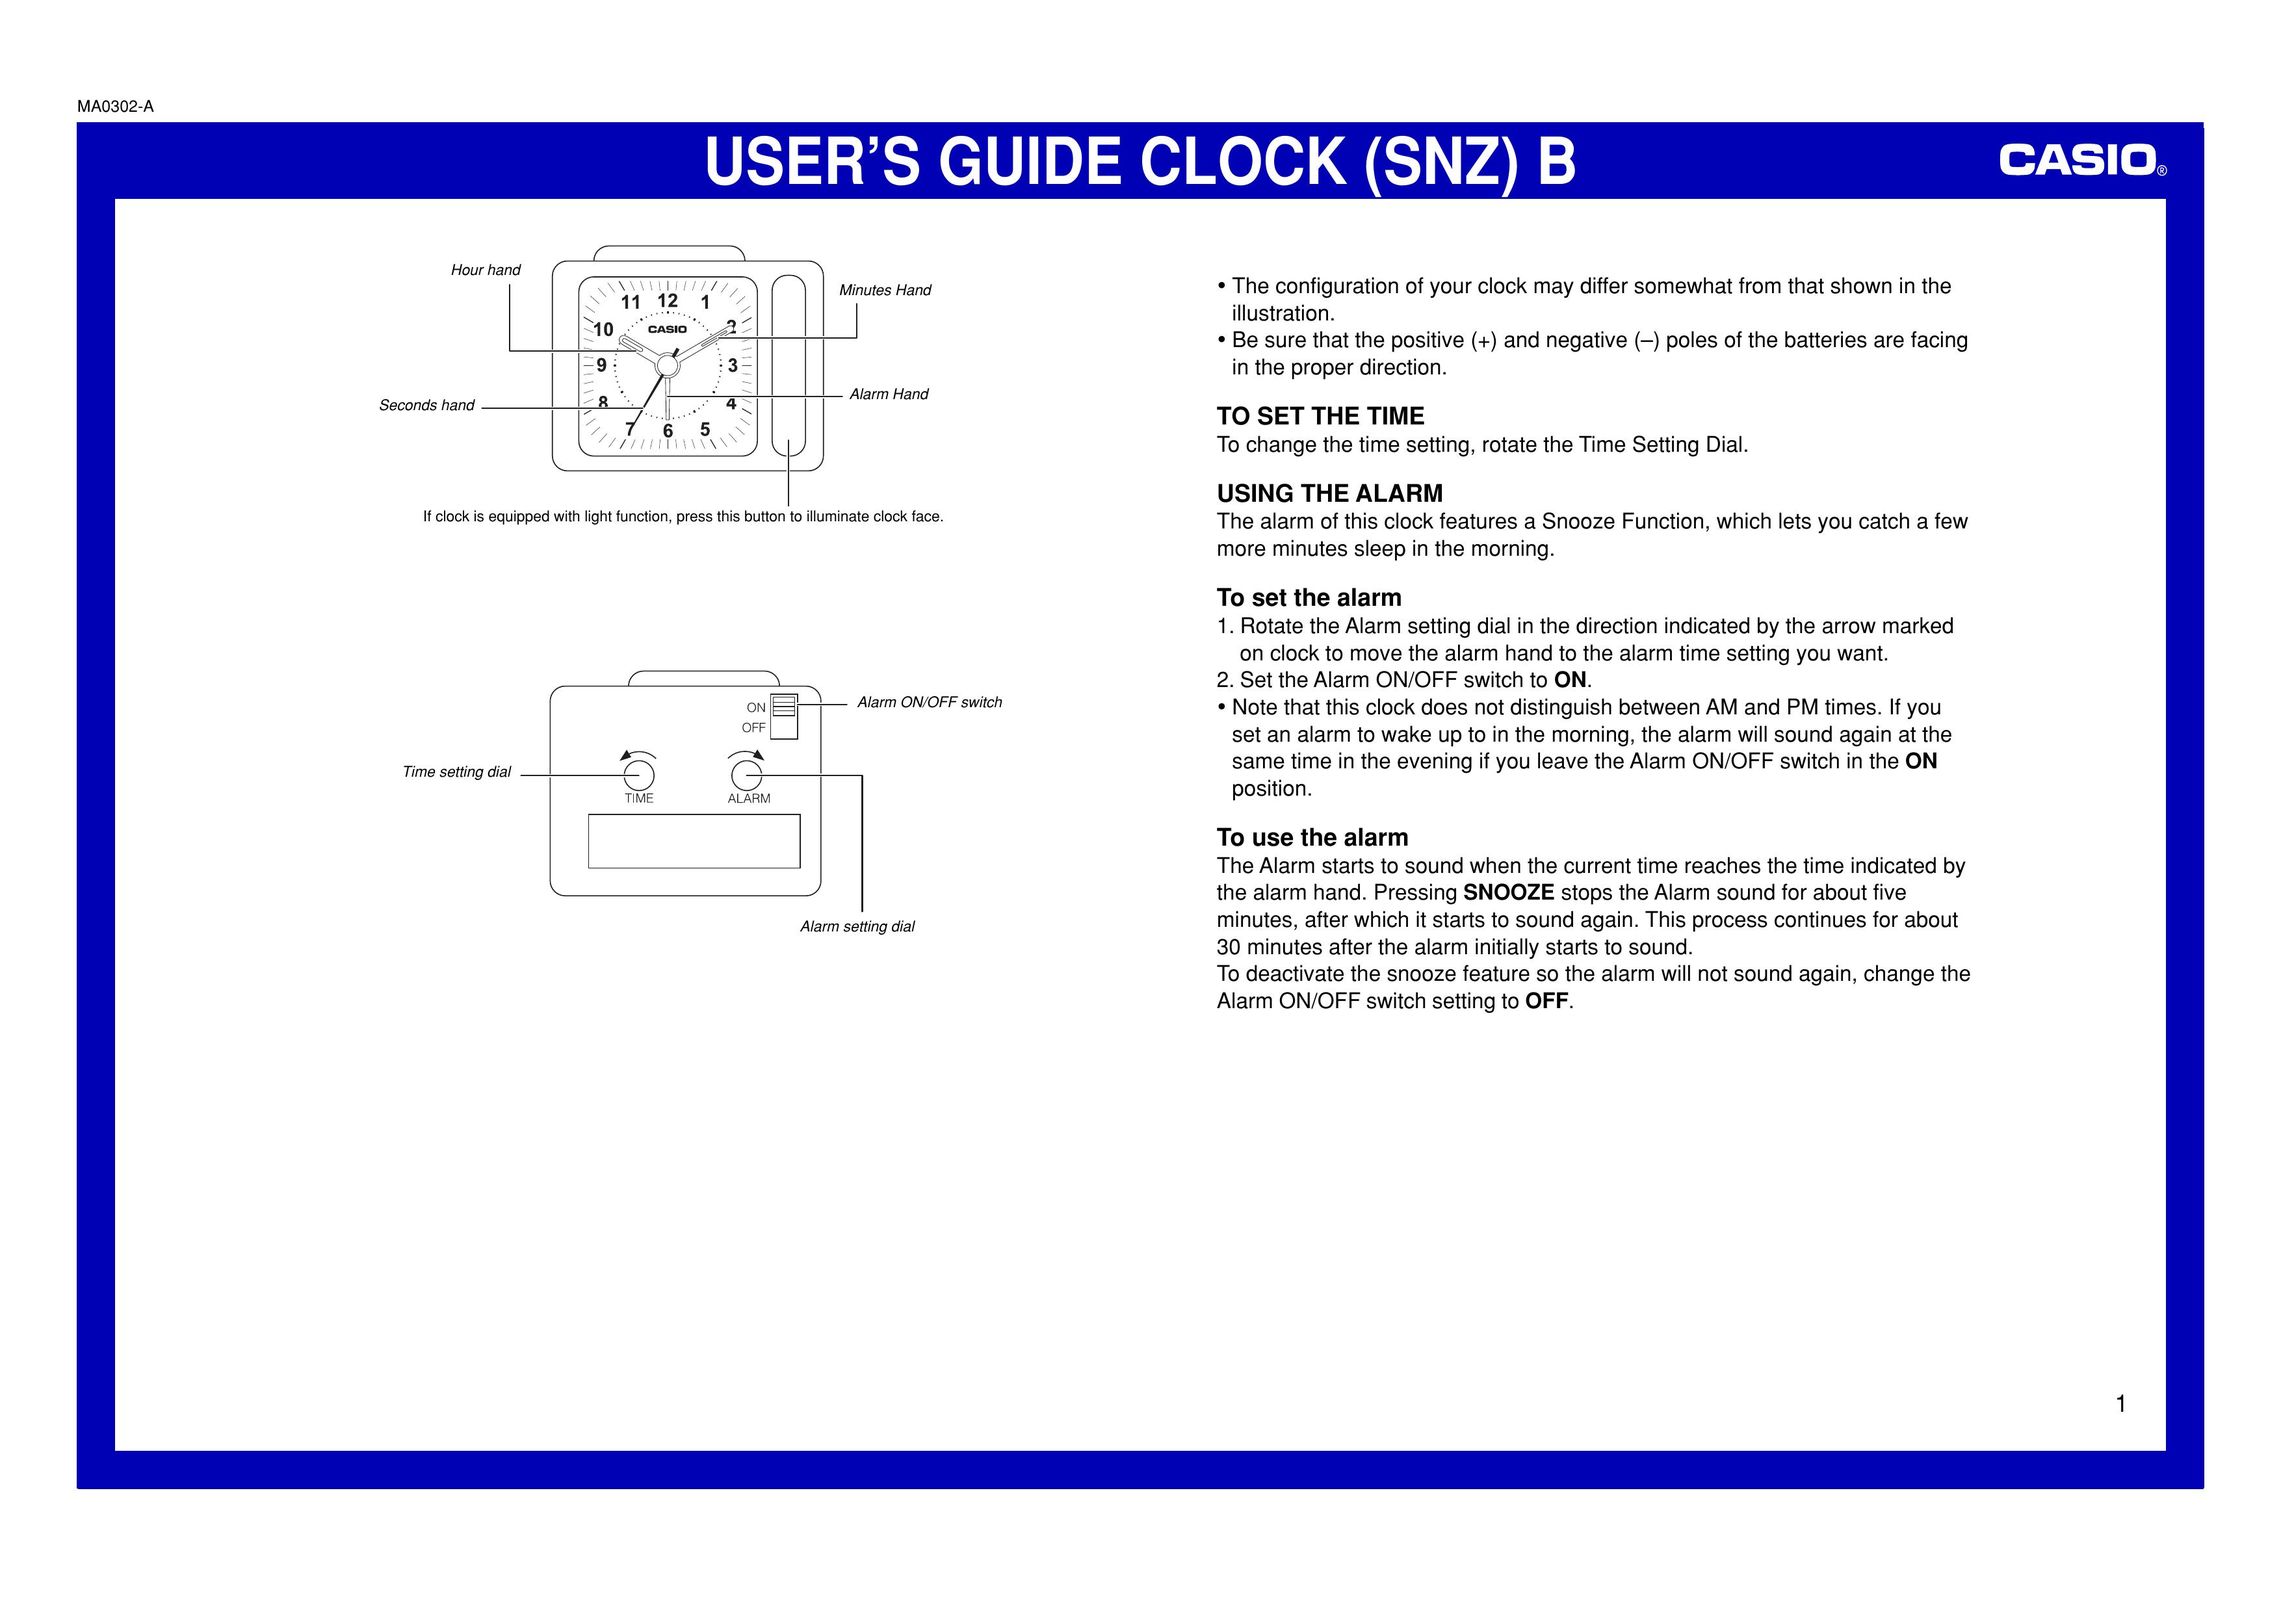 Casio MA0302-A Clock User Manual